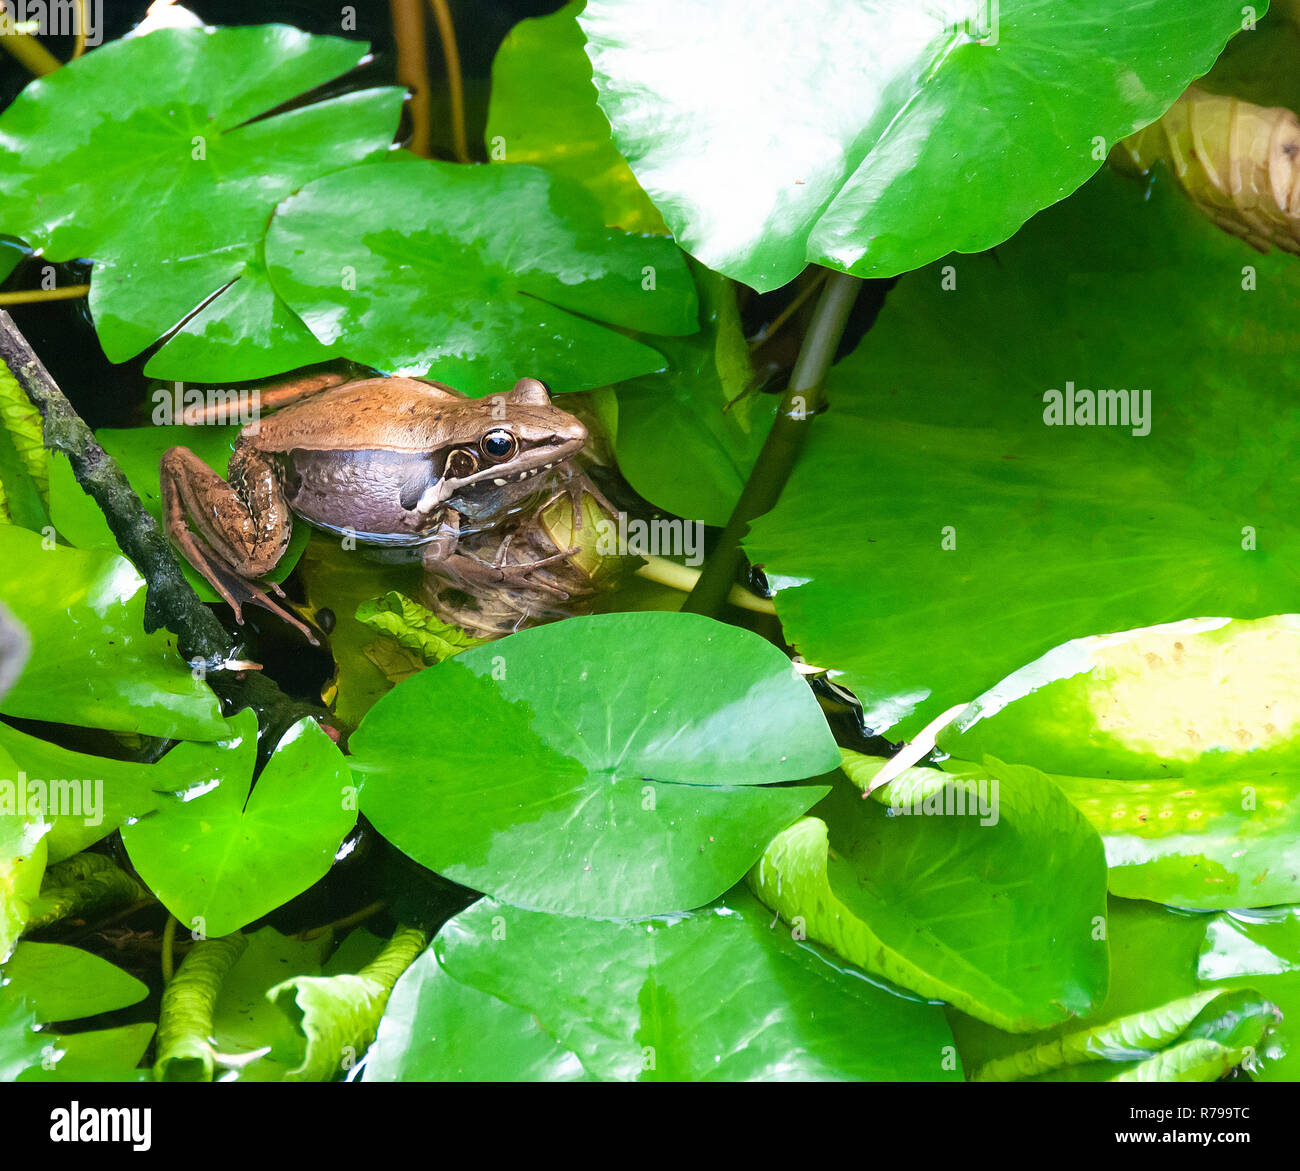 Ornamentlicher Chorfrosch, microhyla fissipes auf Wasserpflanze - Hue, Vietnam Stockfoto